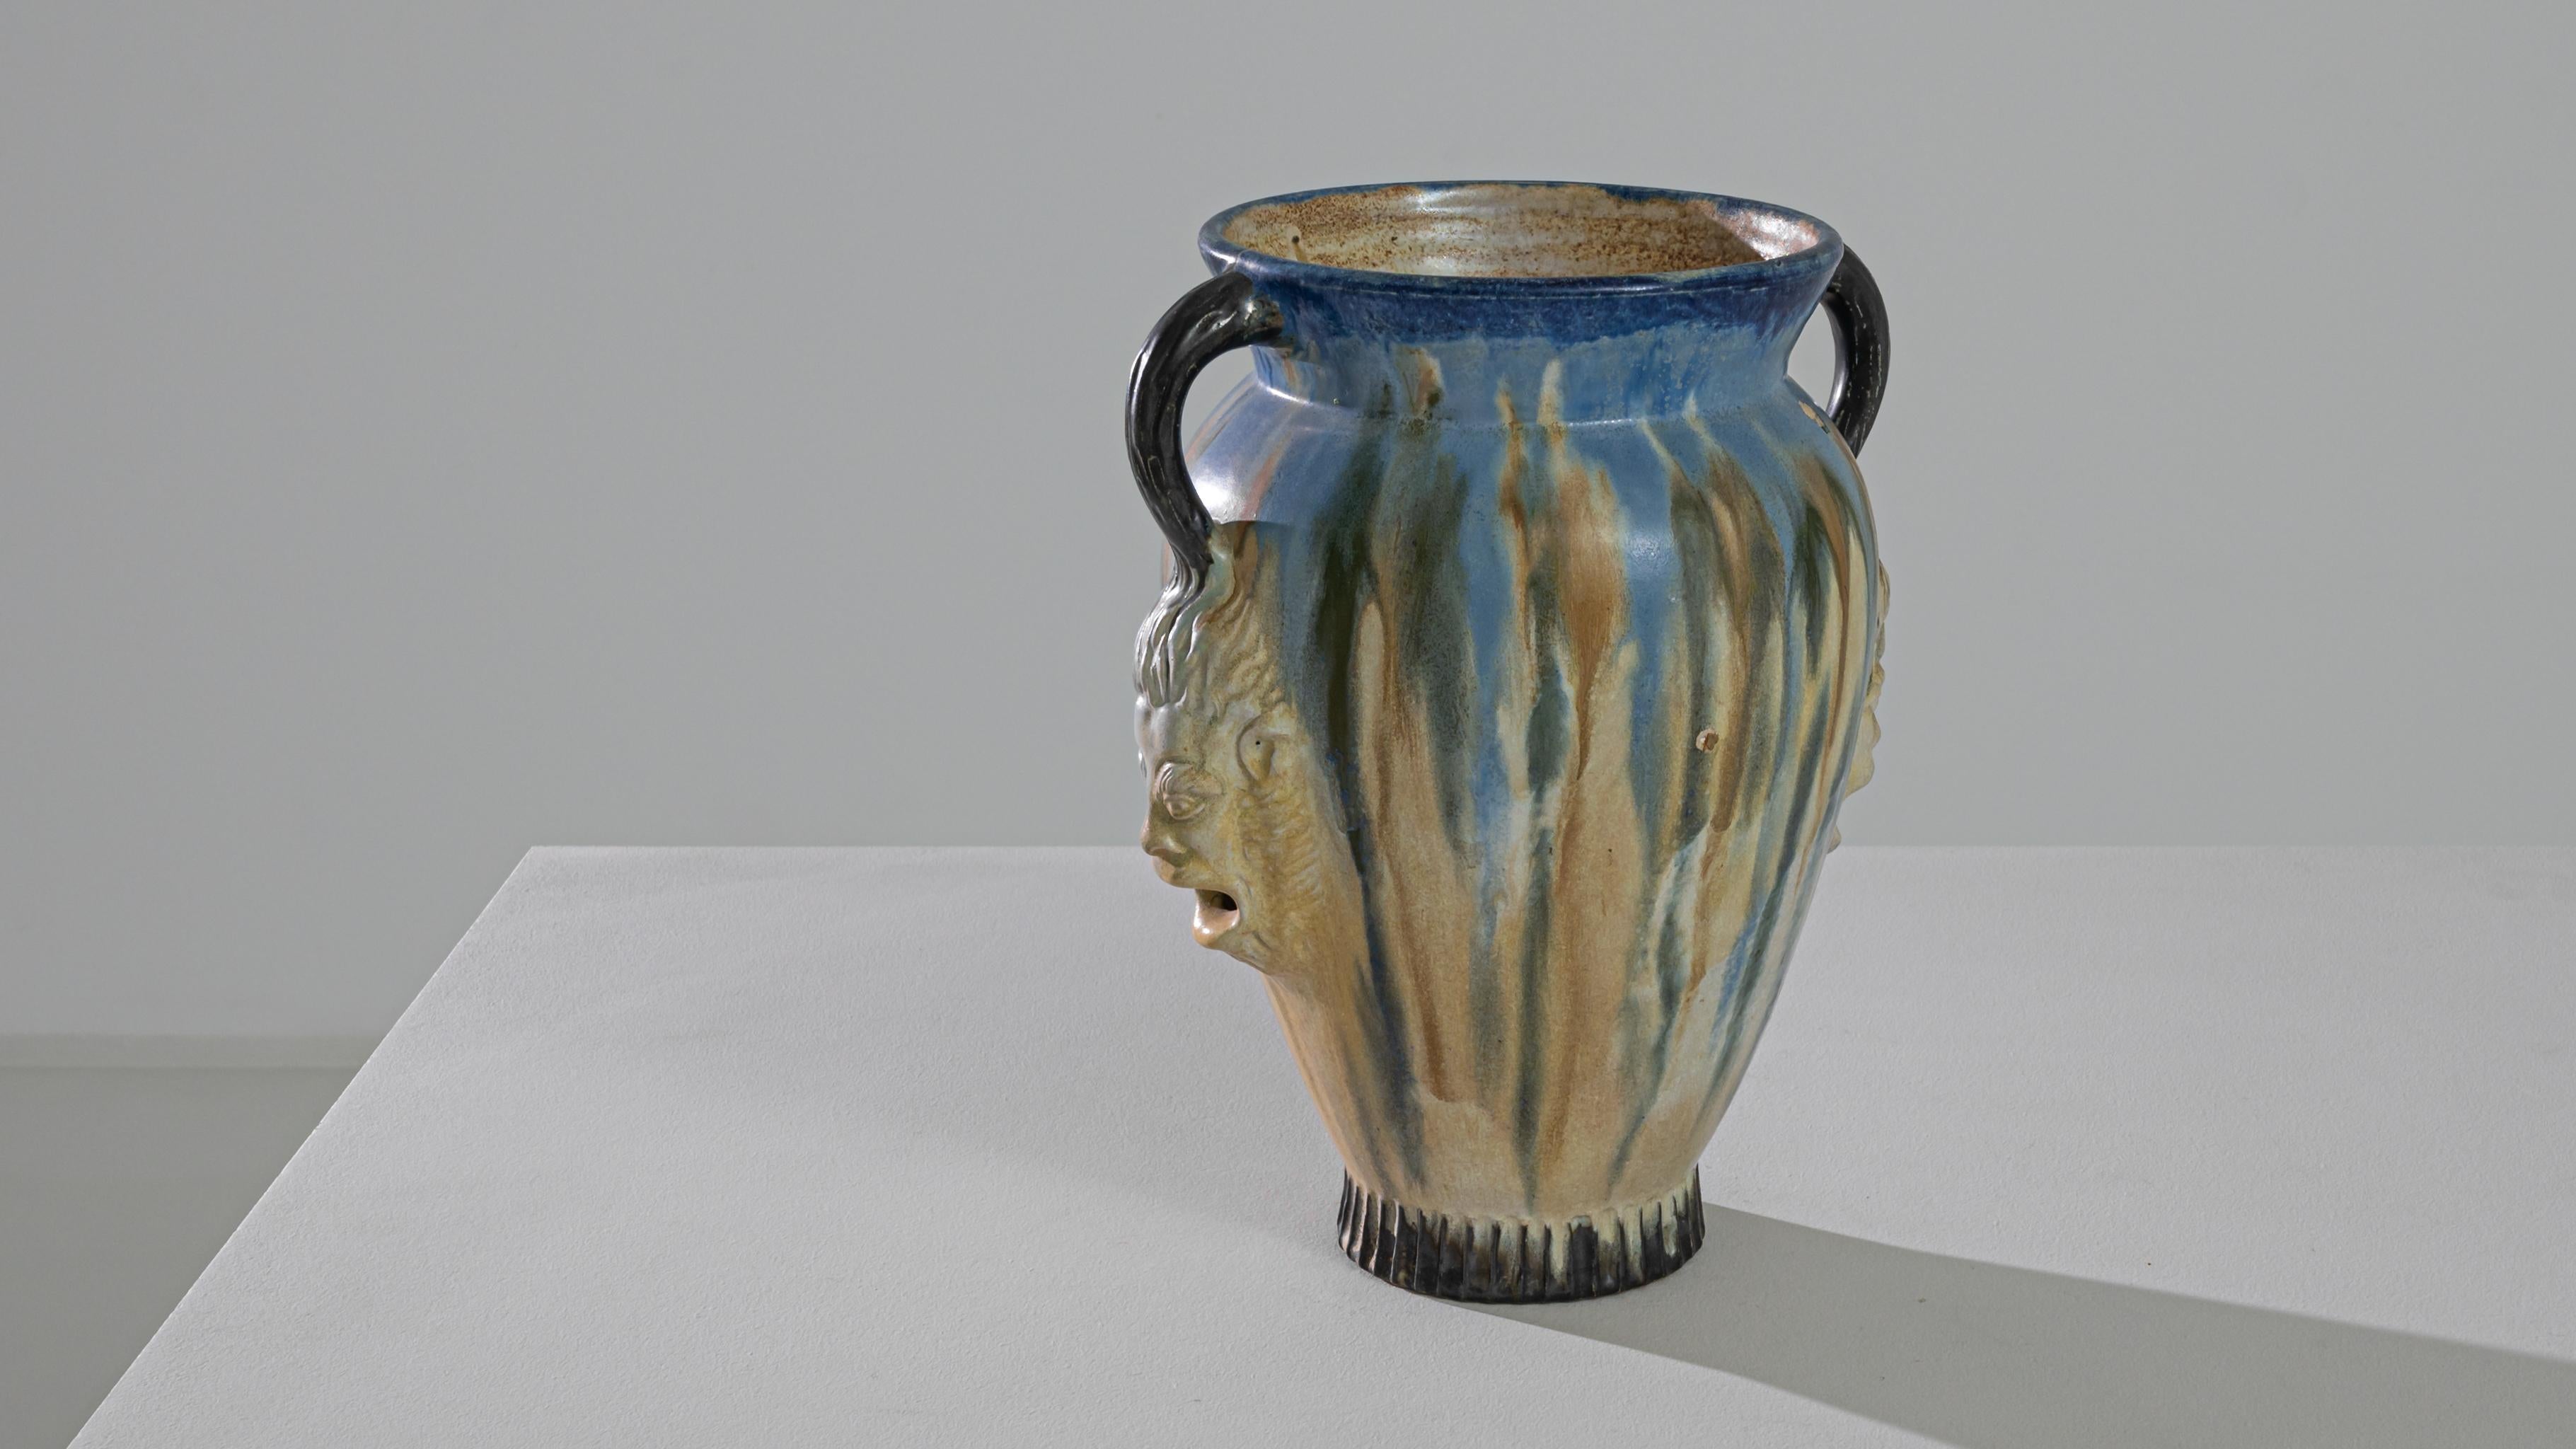 Treten Sie ein in die fesselnde Welt dieser belgischen Keramikvase aus dem Jahr 1965, ein wahres Meisterwerk an Design und Handwerkskunst. Die Vase ist in einen faszinierenden Tanz aus blauen und weißen Farbtönen gekleidet, die nahtlos ineinander